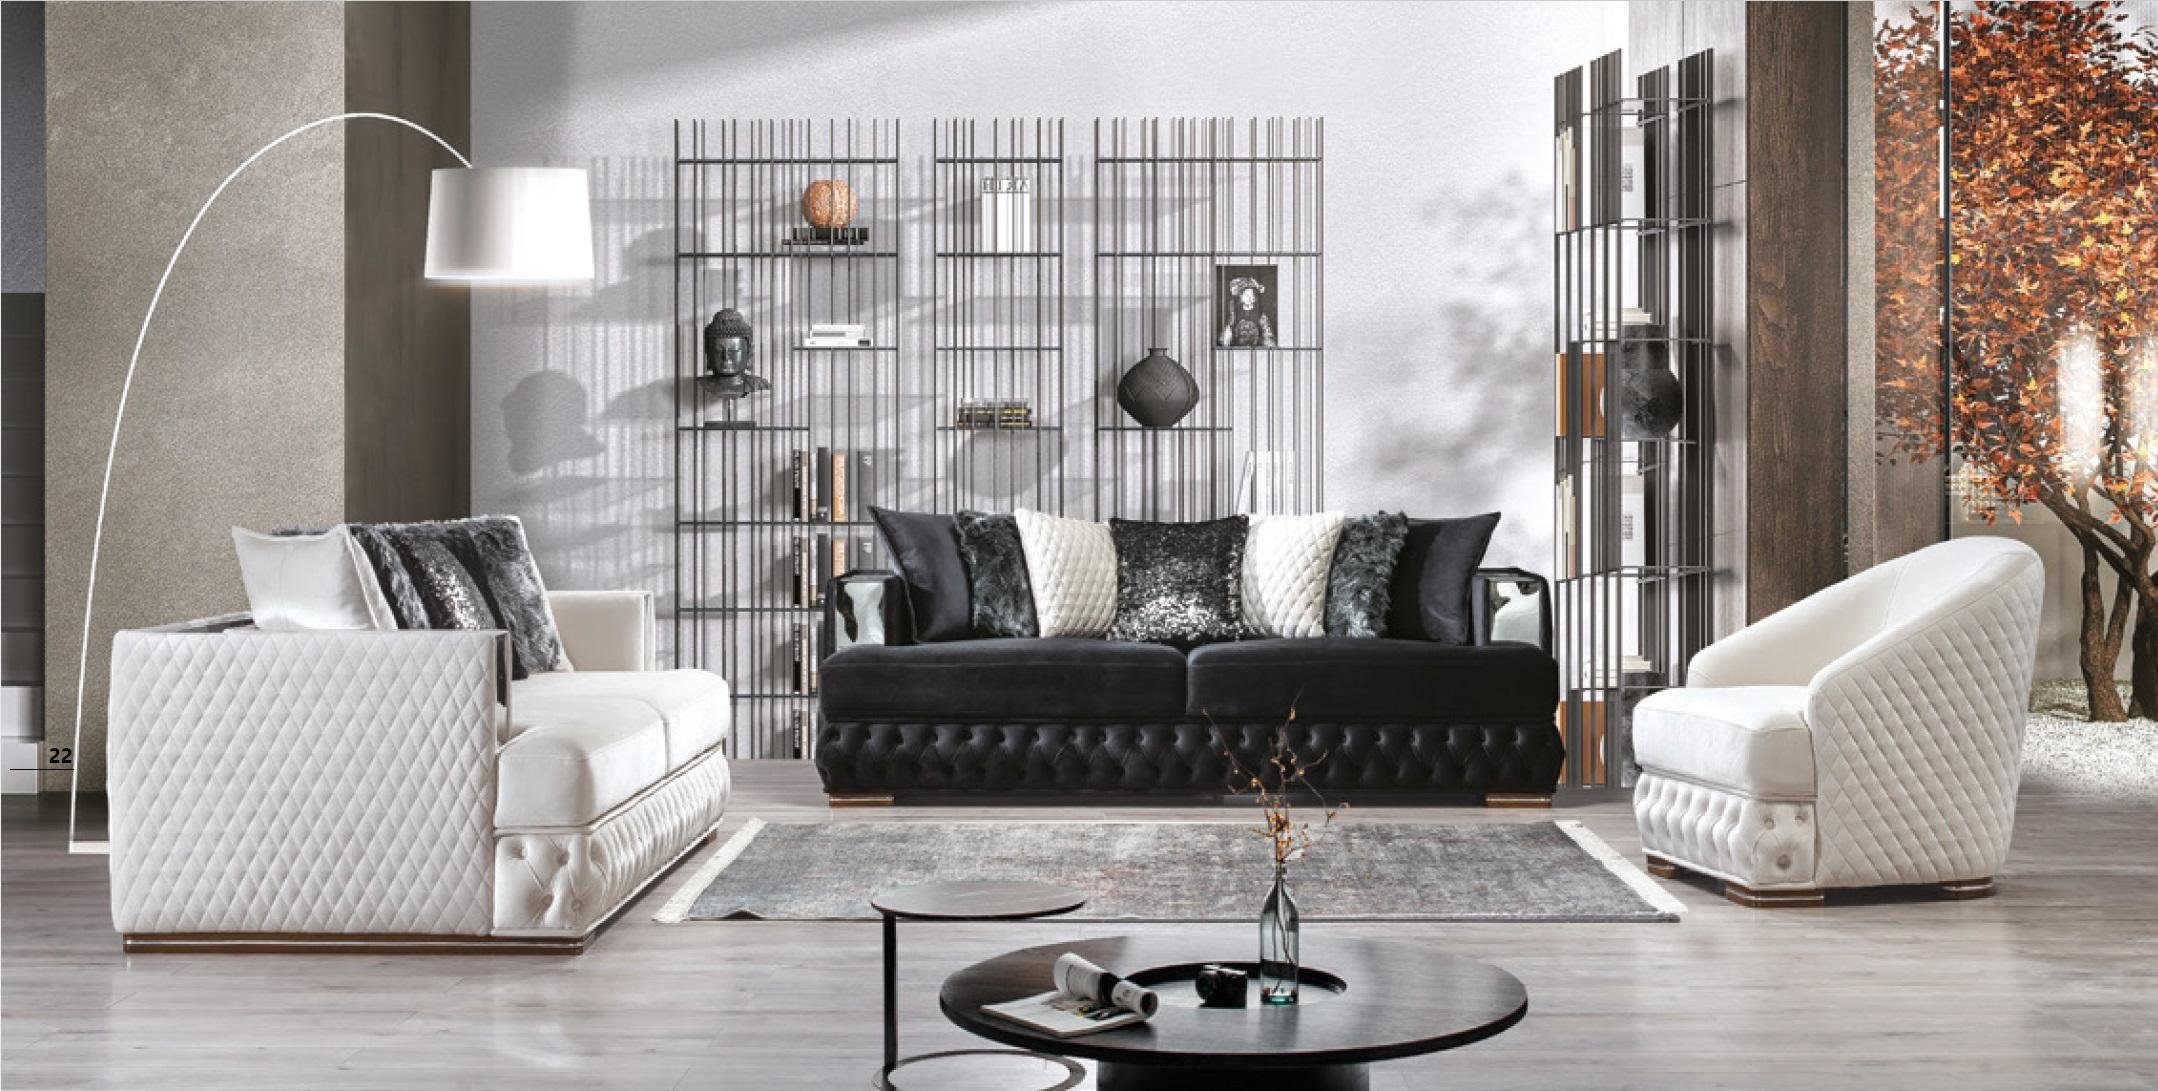 Wohnlandschaft, Sofa Chesterfield Made 3+3+1 in Europe Sofagarnitur JVmoebel Möbel Luxus Couch